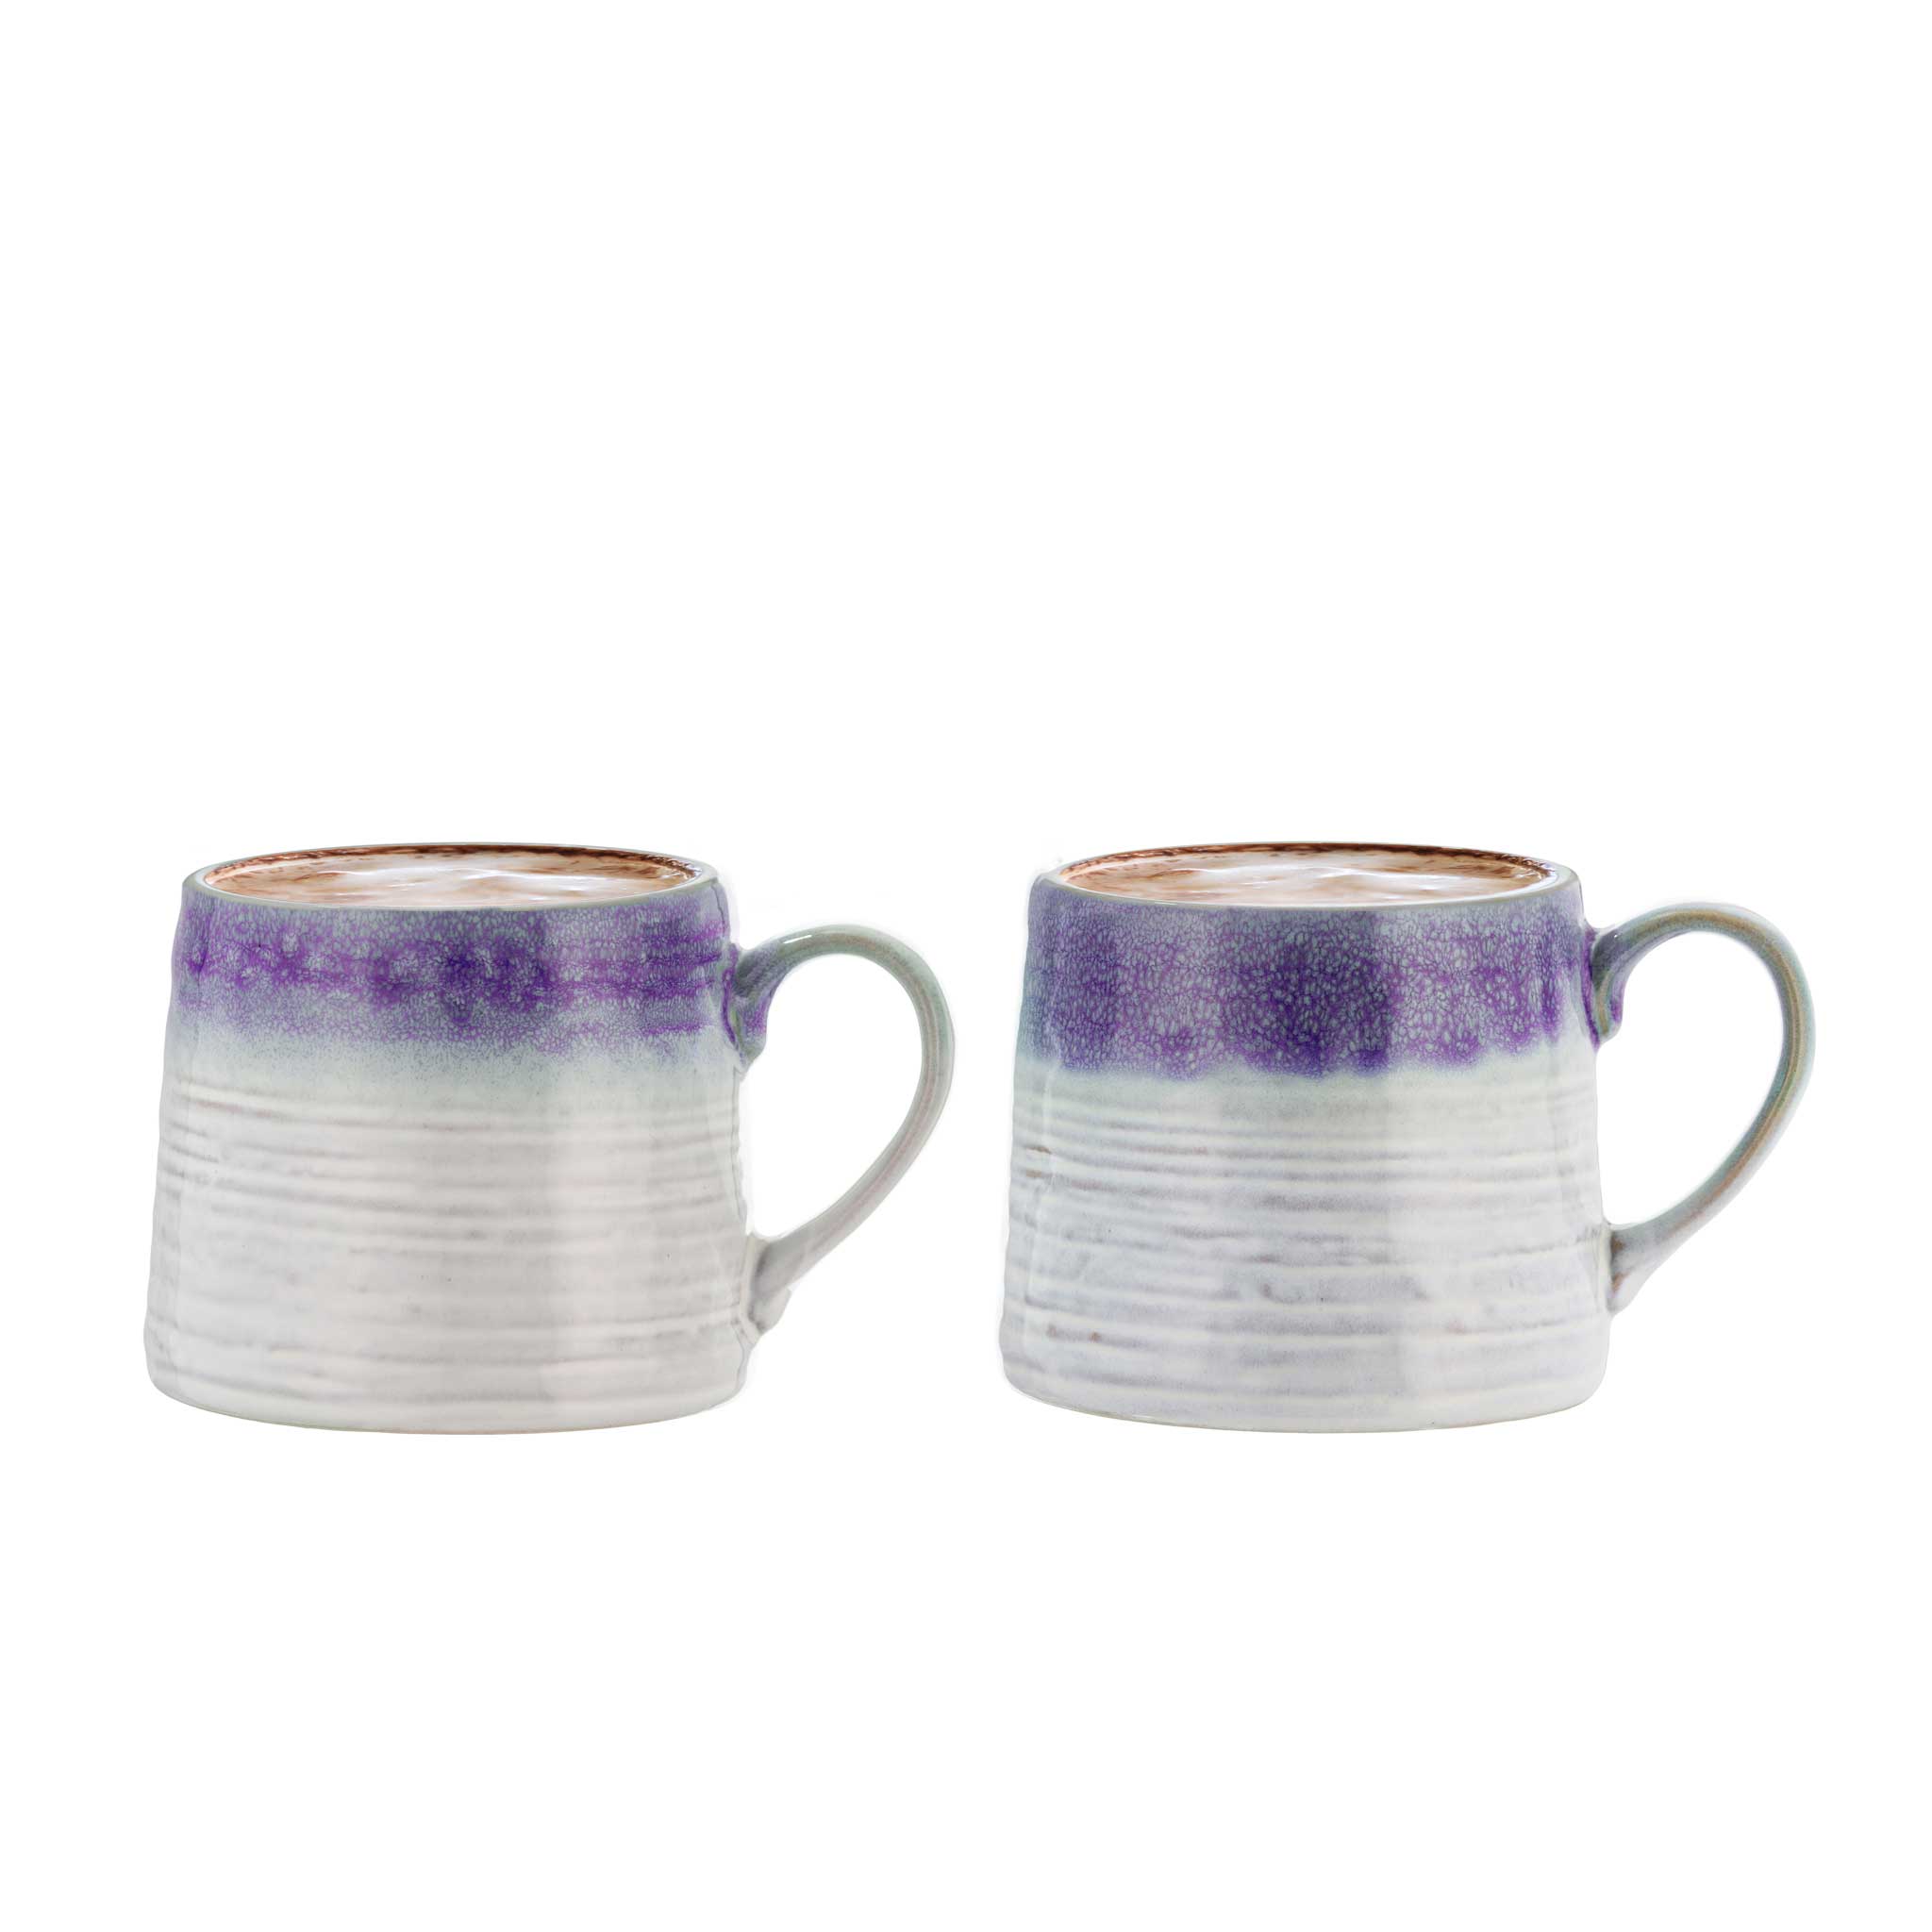 Purple & Grey Glaze Mugs from China Blue